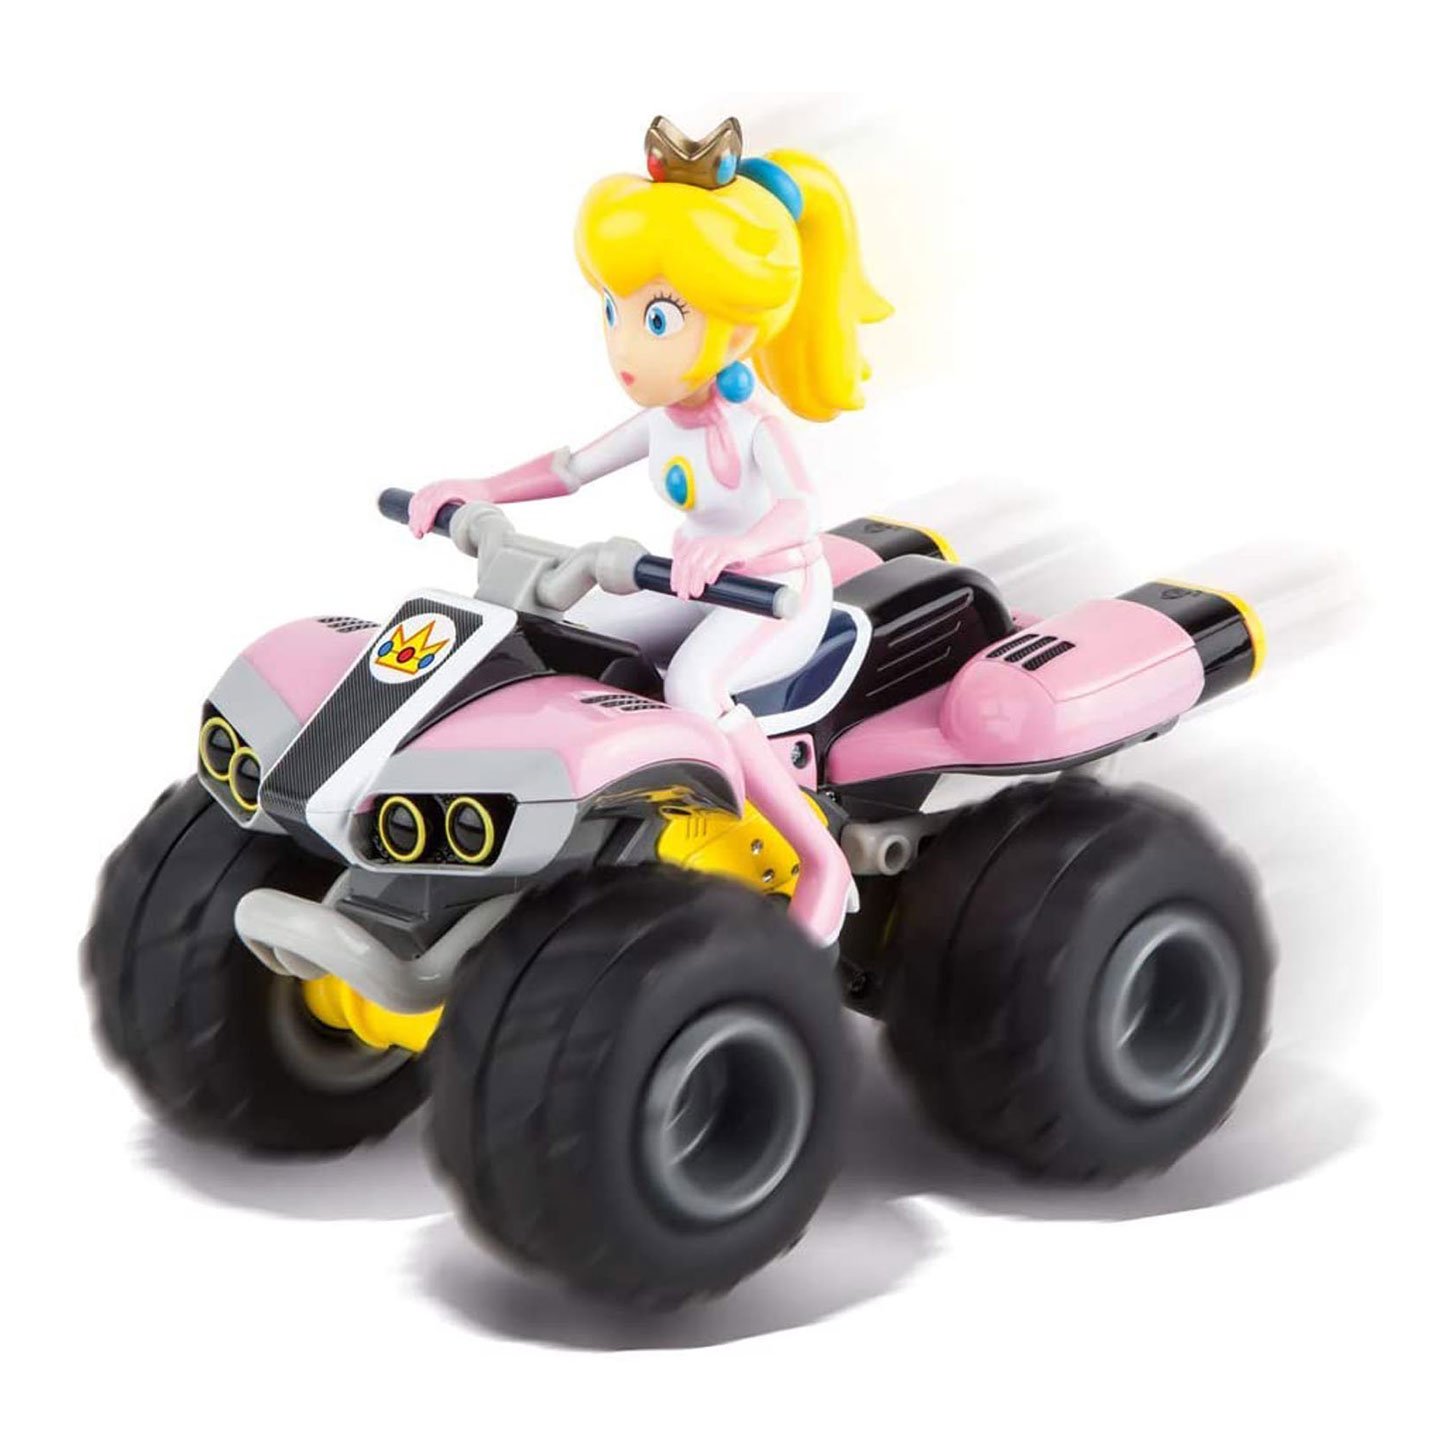 Carrera RC – Super Mario Kart Peach Quad